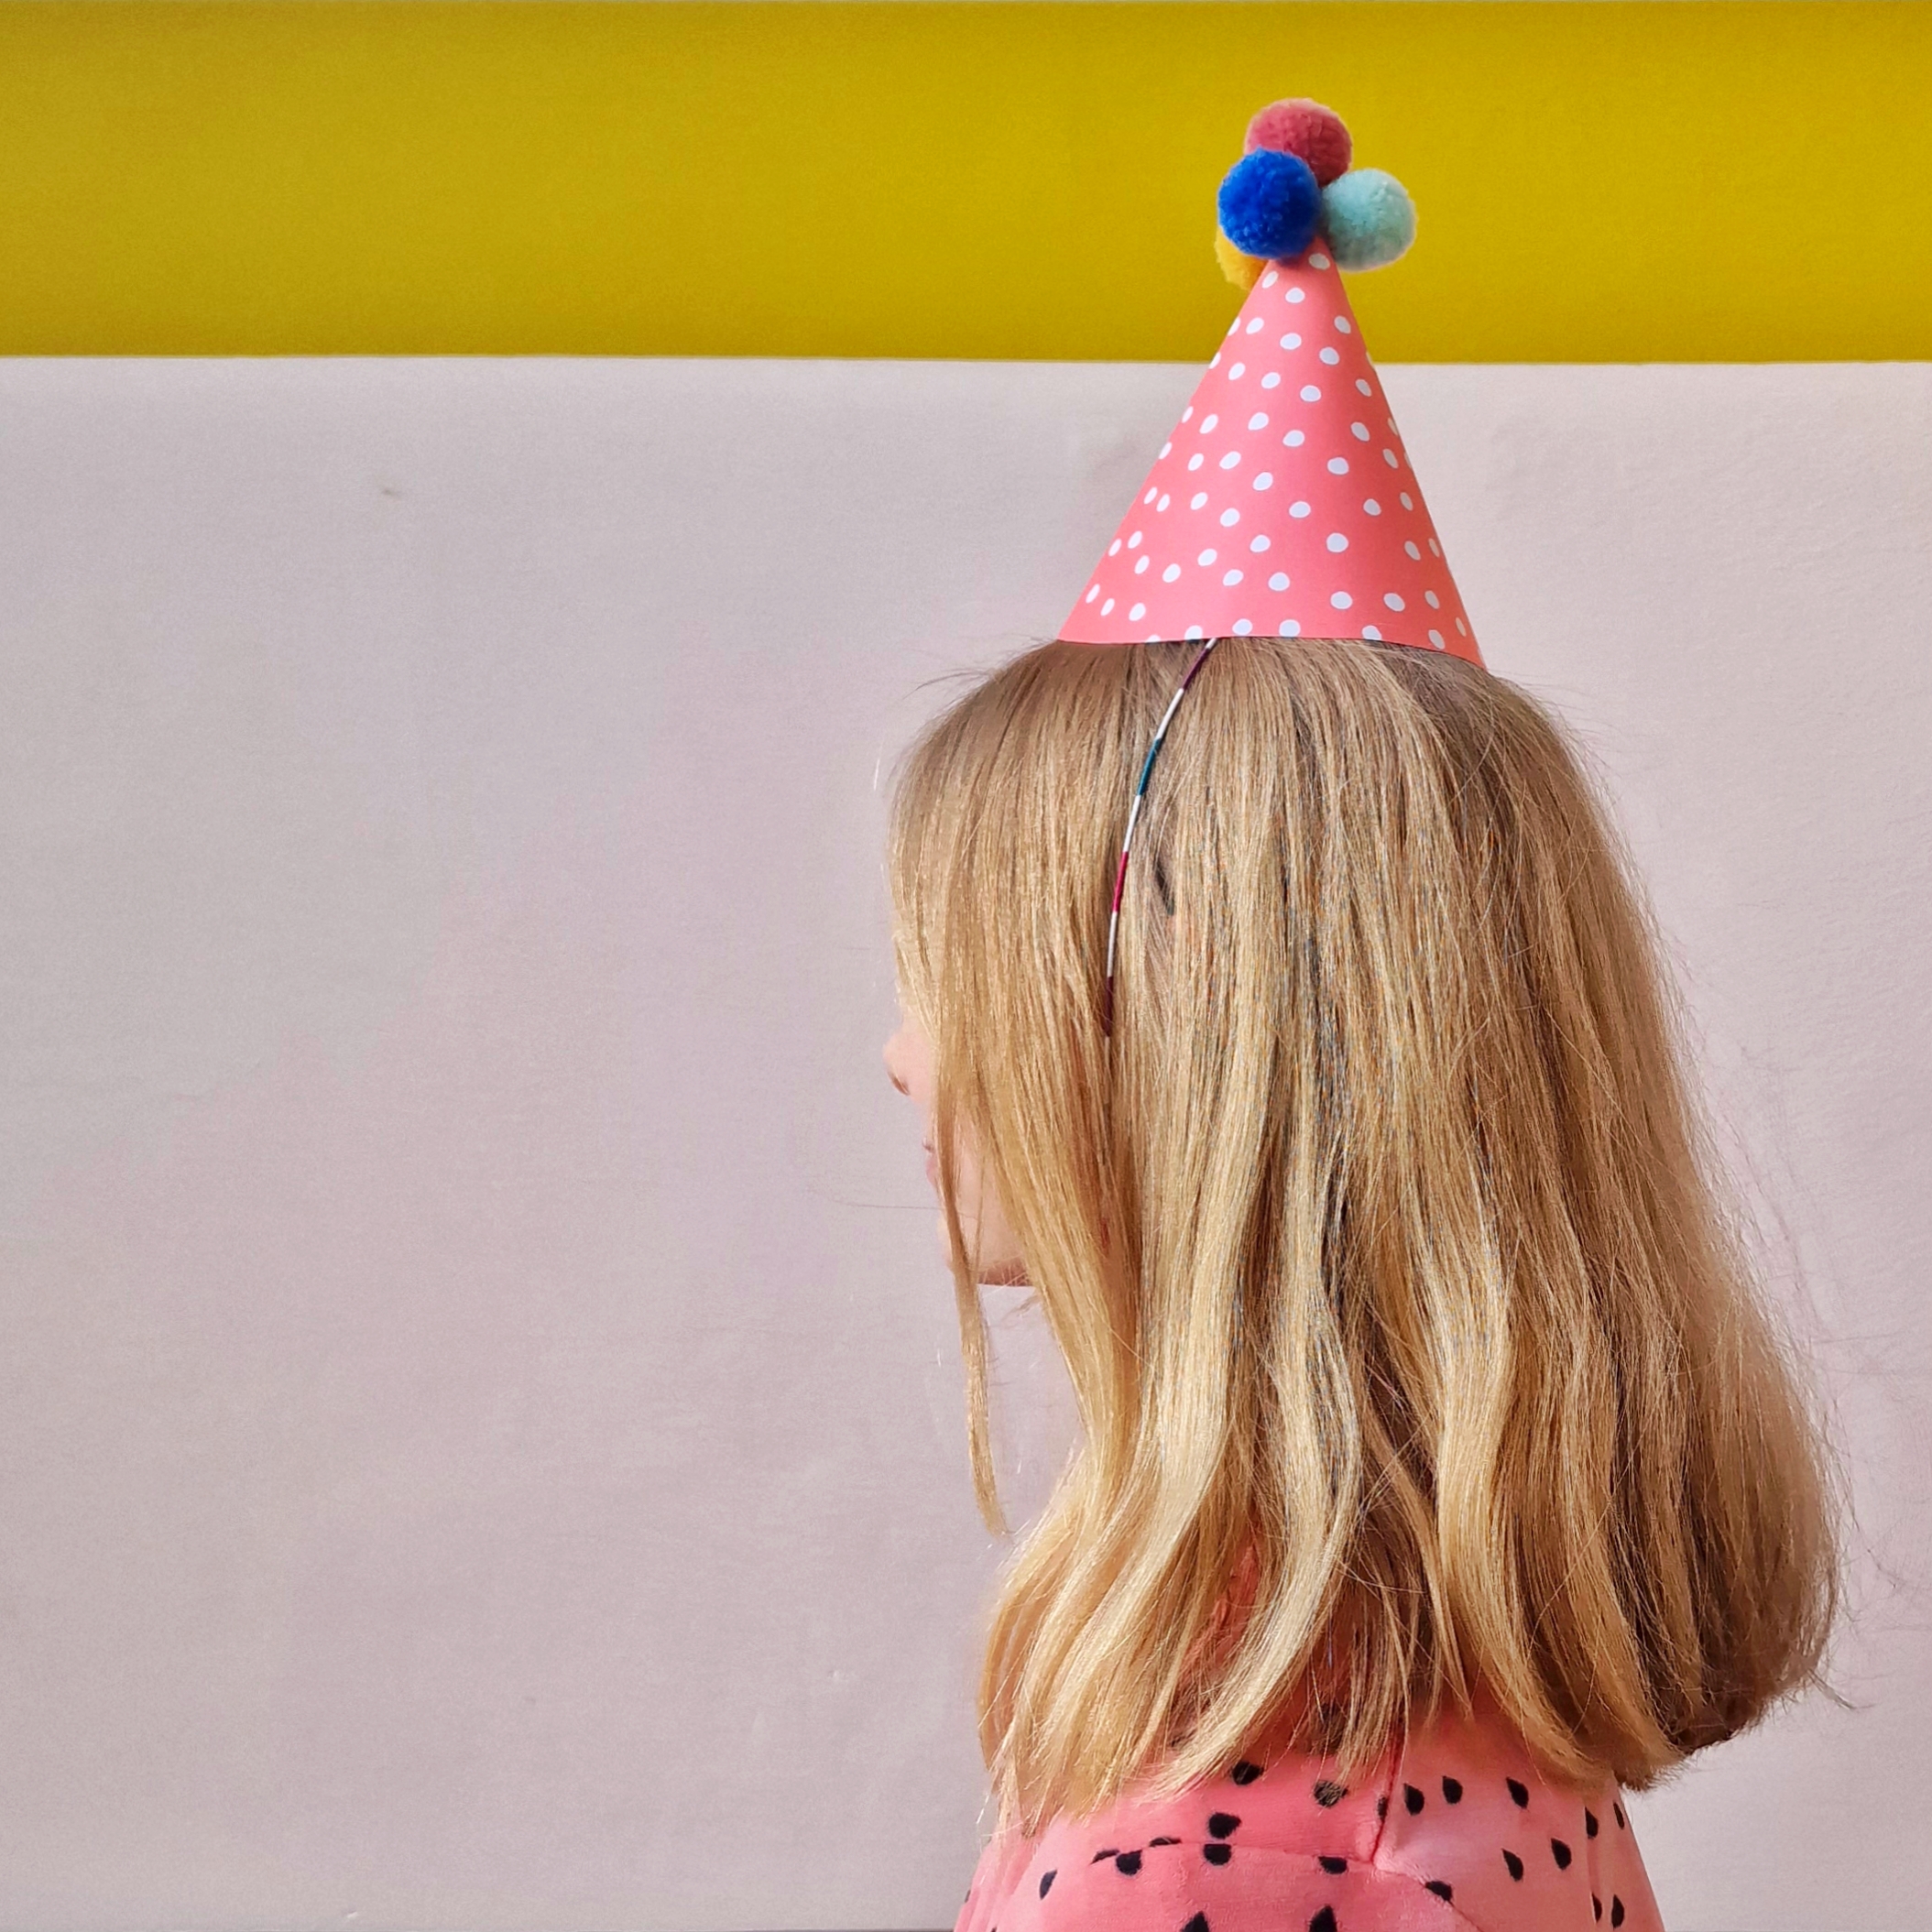 Verjaardag knutselen: leuke ideeën voor jarige kinderen. Op zoek naar leuke ideeën om voor een verjaardag te knutselen? Hier vind je leuke knutsel ideeën voor jarige kinderen.